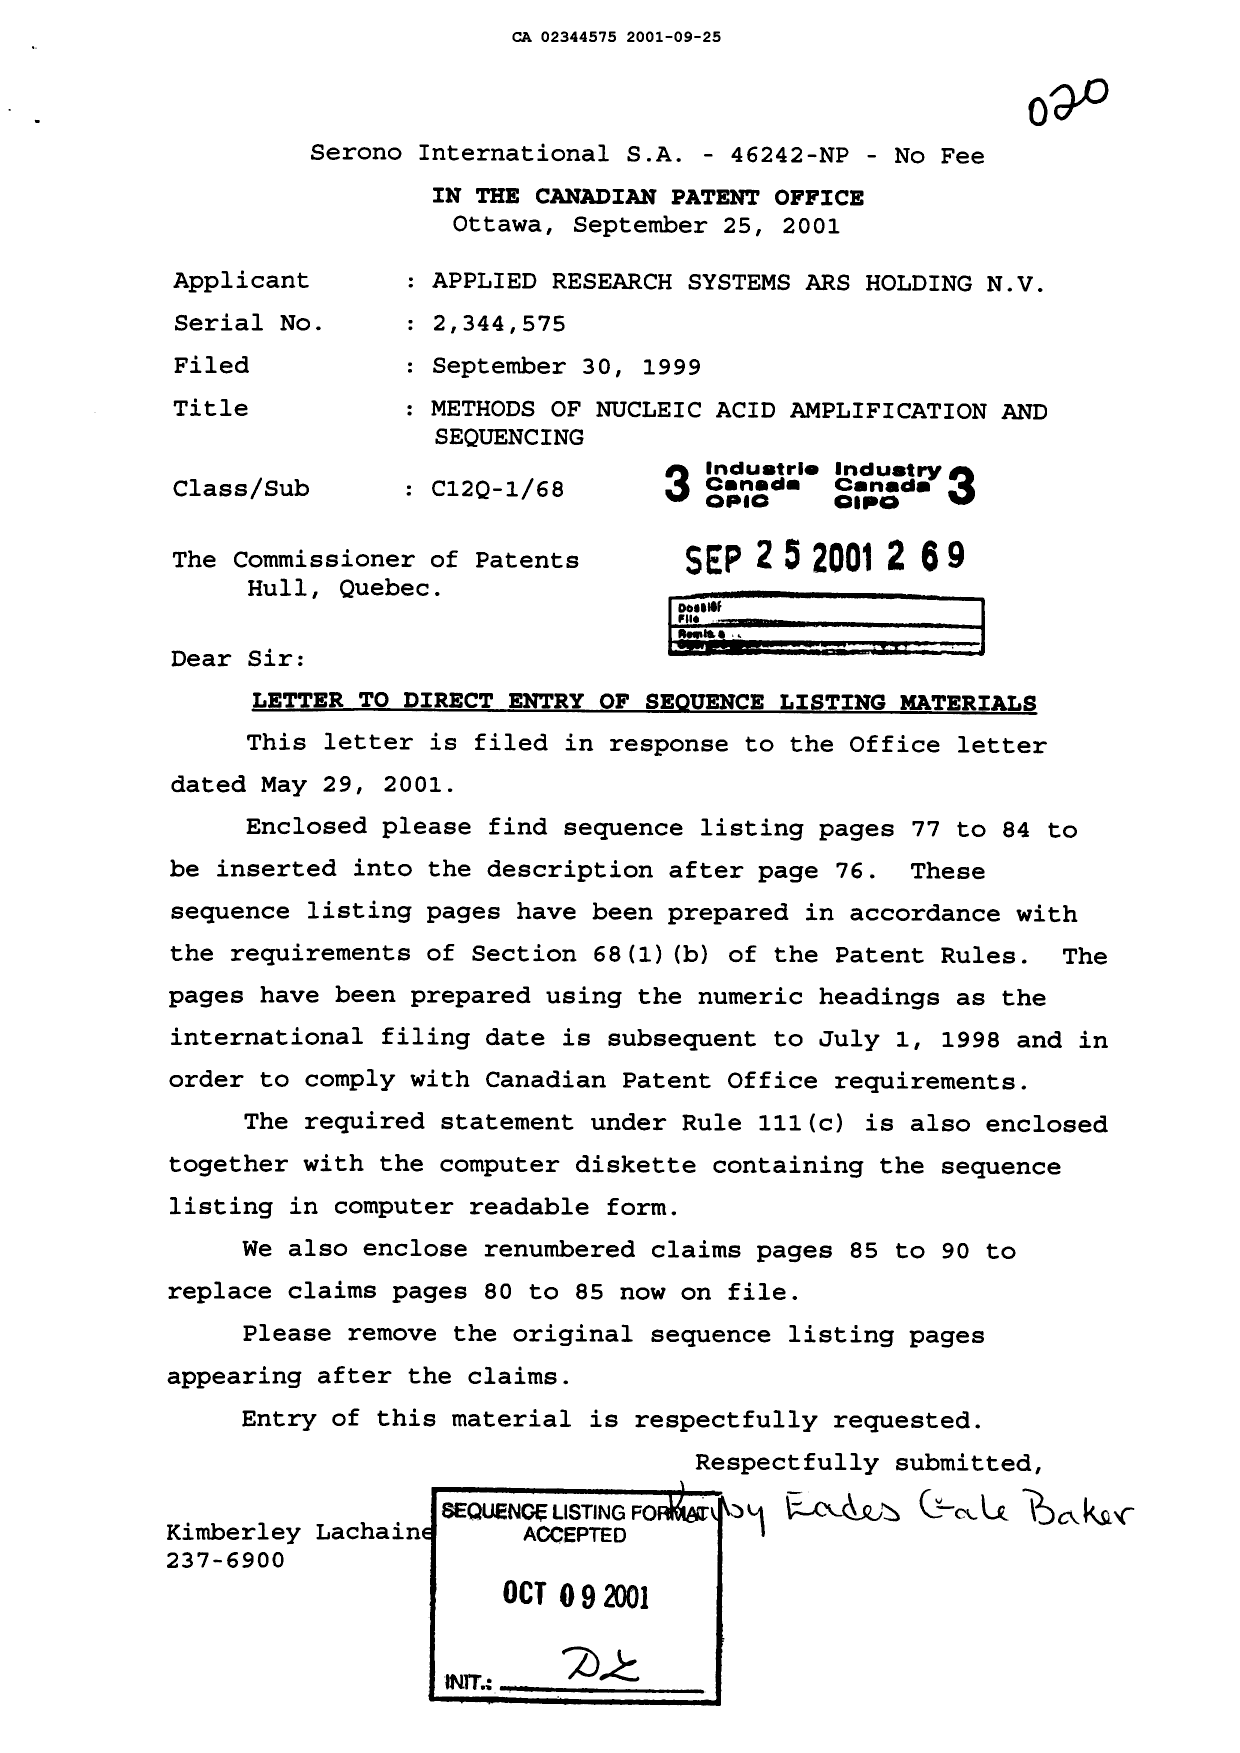 Document de brevet canadien 2344575. Correspondance 20010925. Image 1 de 16